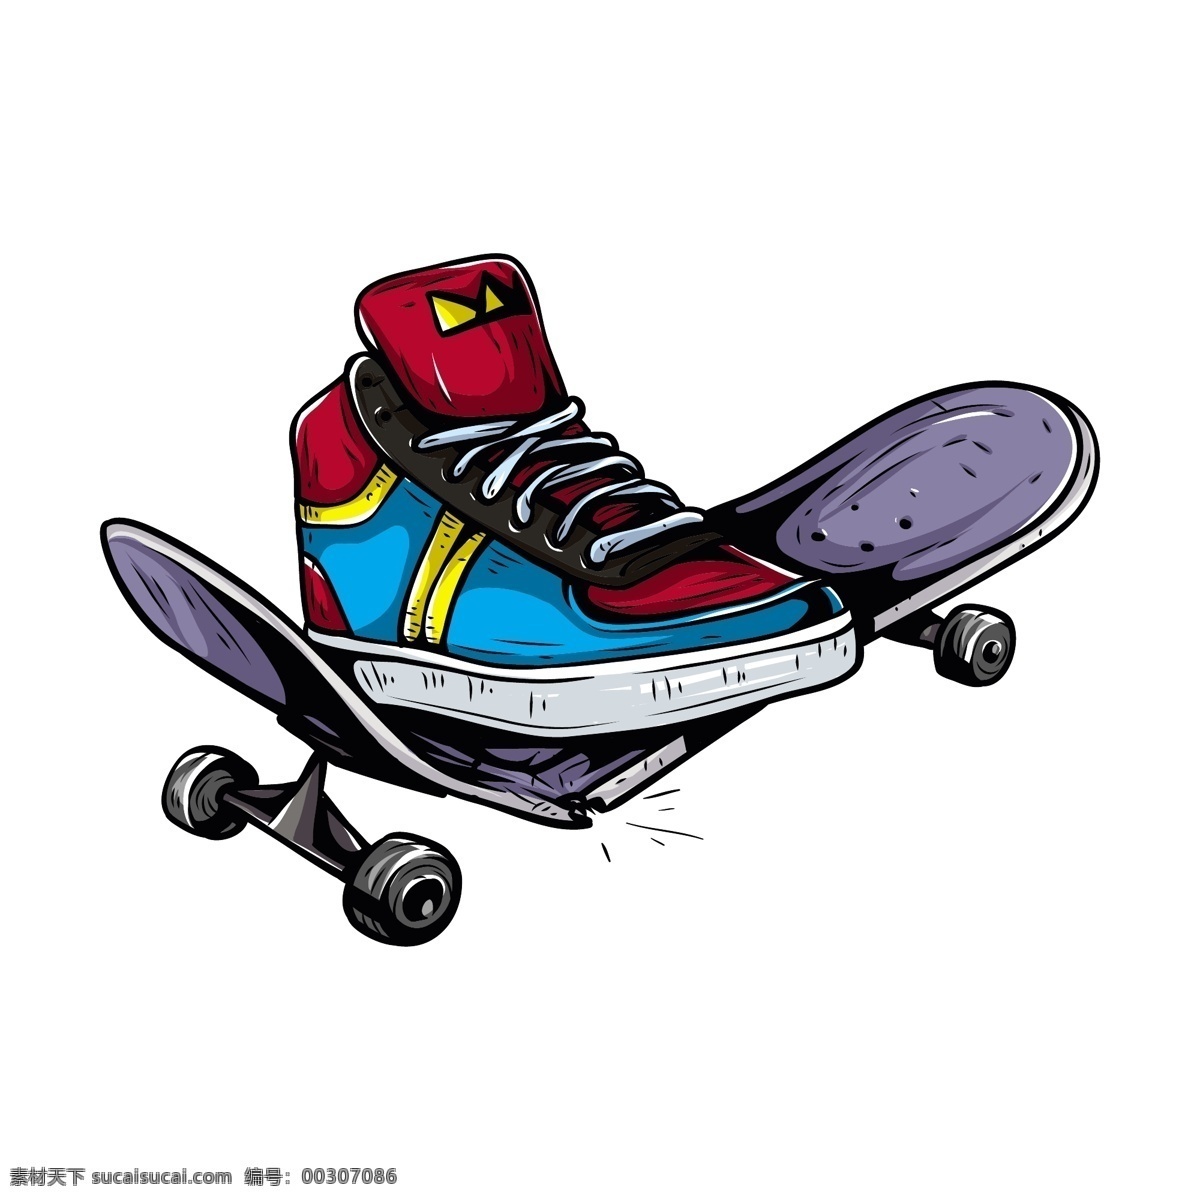 滑板上的鞋子 滑板 卡通鞋子 体育运动漫画 卡通漫画 卡通插画 体育运动 生活百科 矢量素材 白色